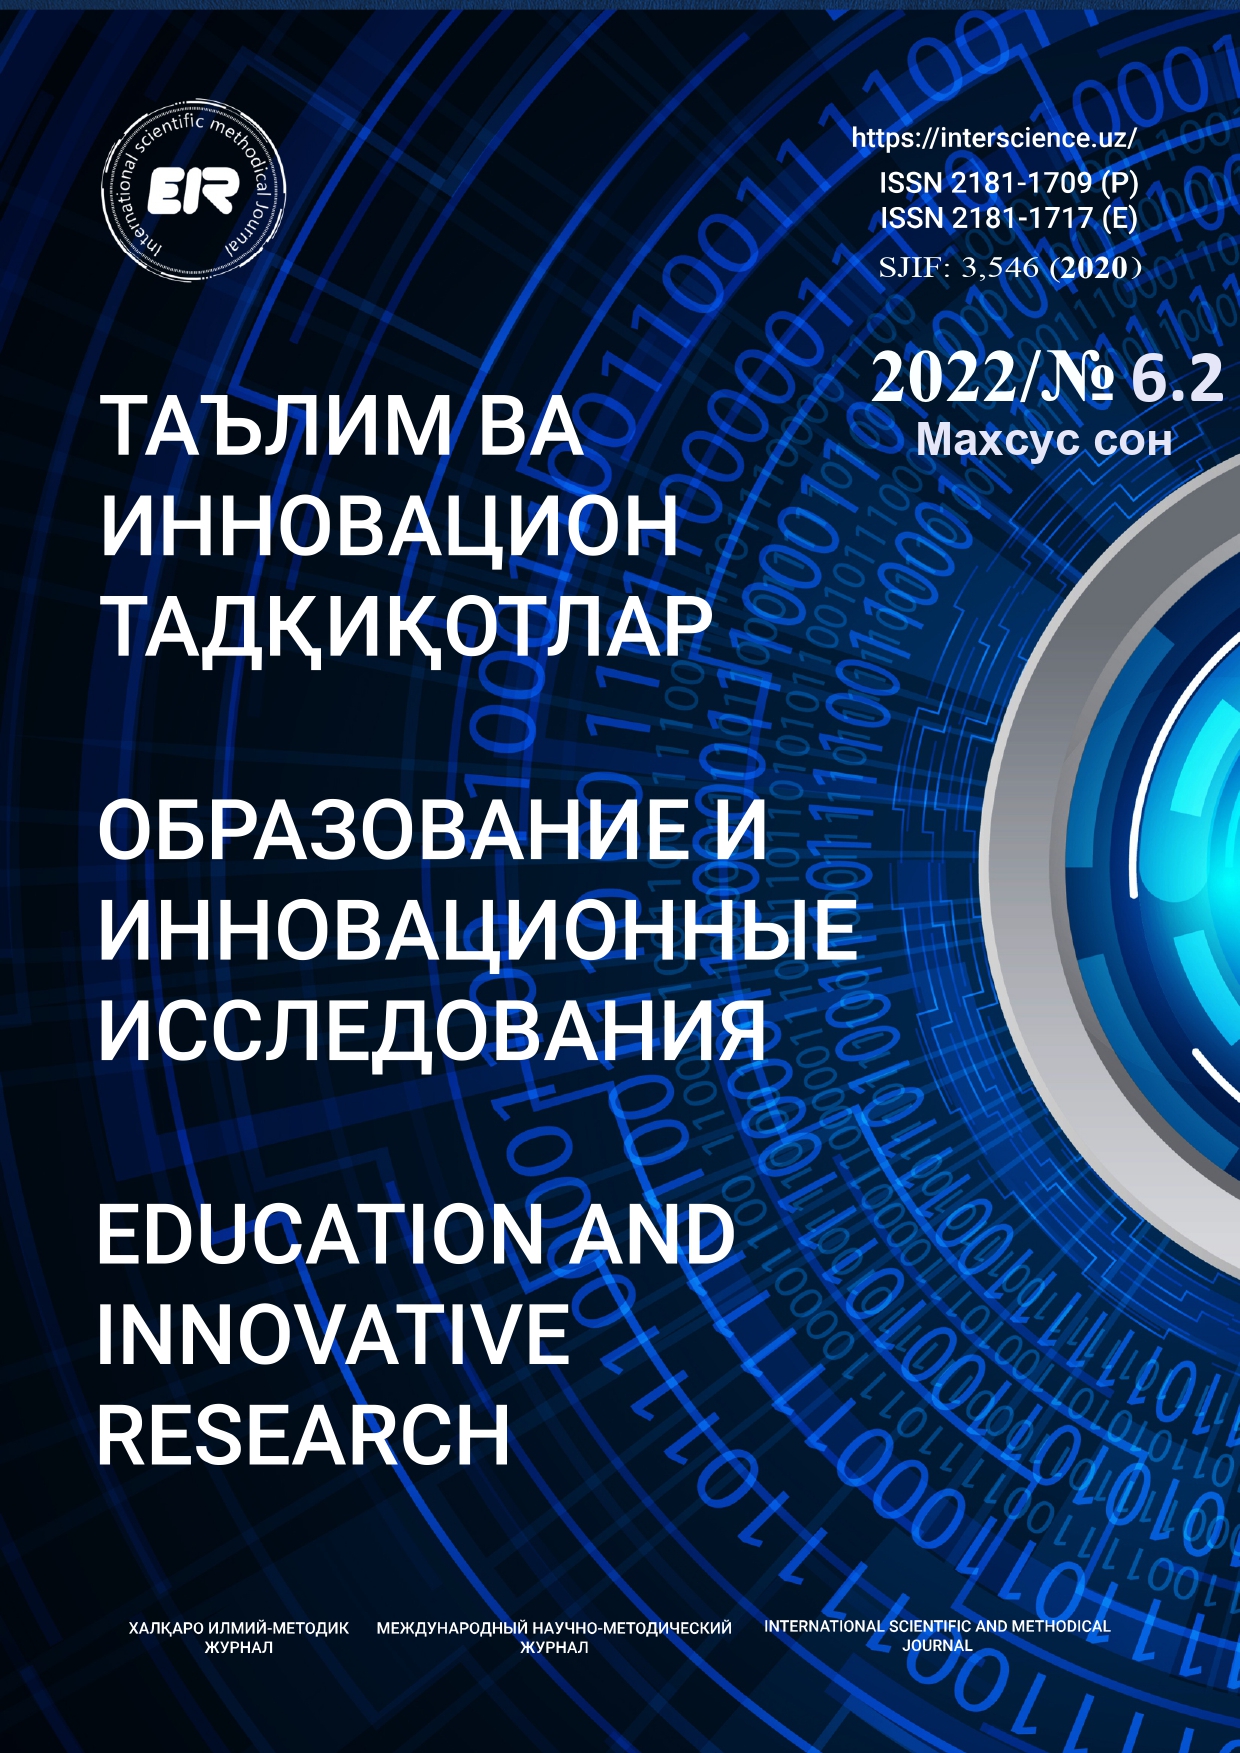 					Показать № 6.2. Махсус сон (2022): Образование и инновационные исследования
				